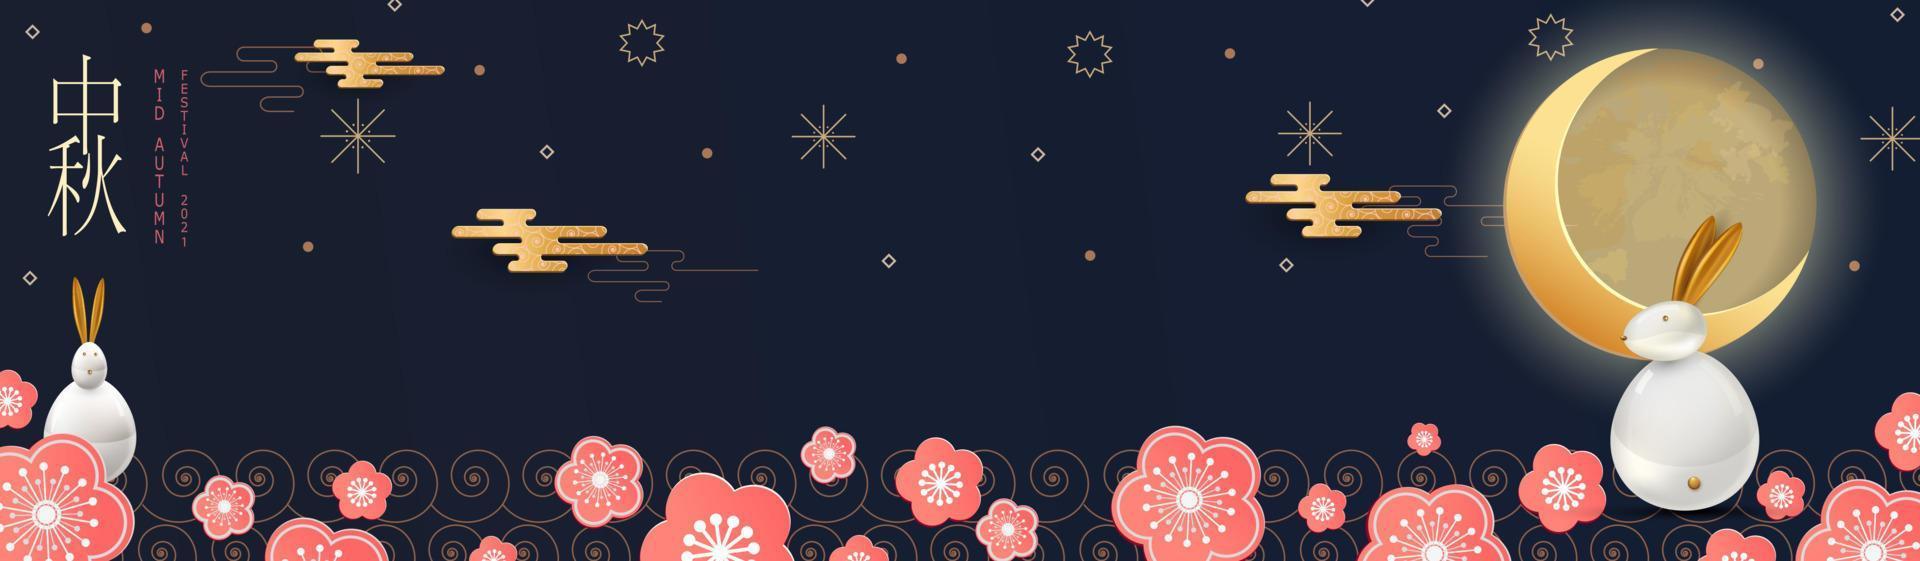 diseño de pancartas con patrones de círculos chinos tradicionales que representan la luna llena, liebre brillante bajo la luna. texto chino feliz mediados de otoño. vector